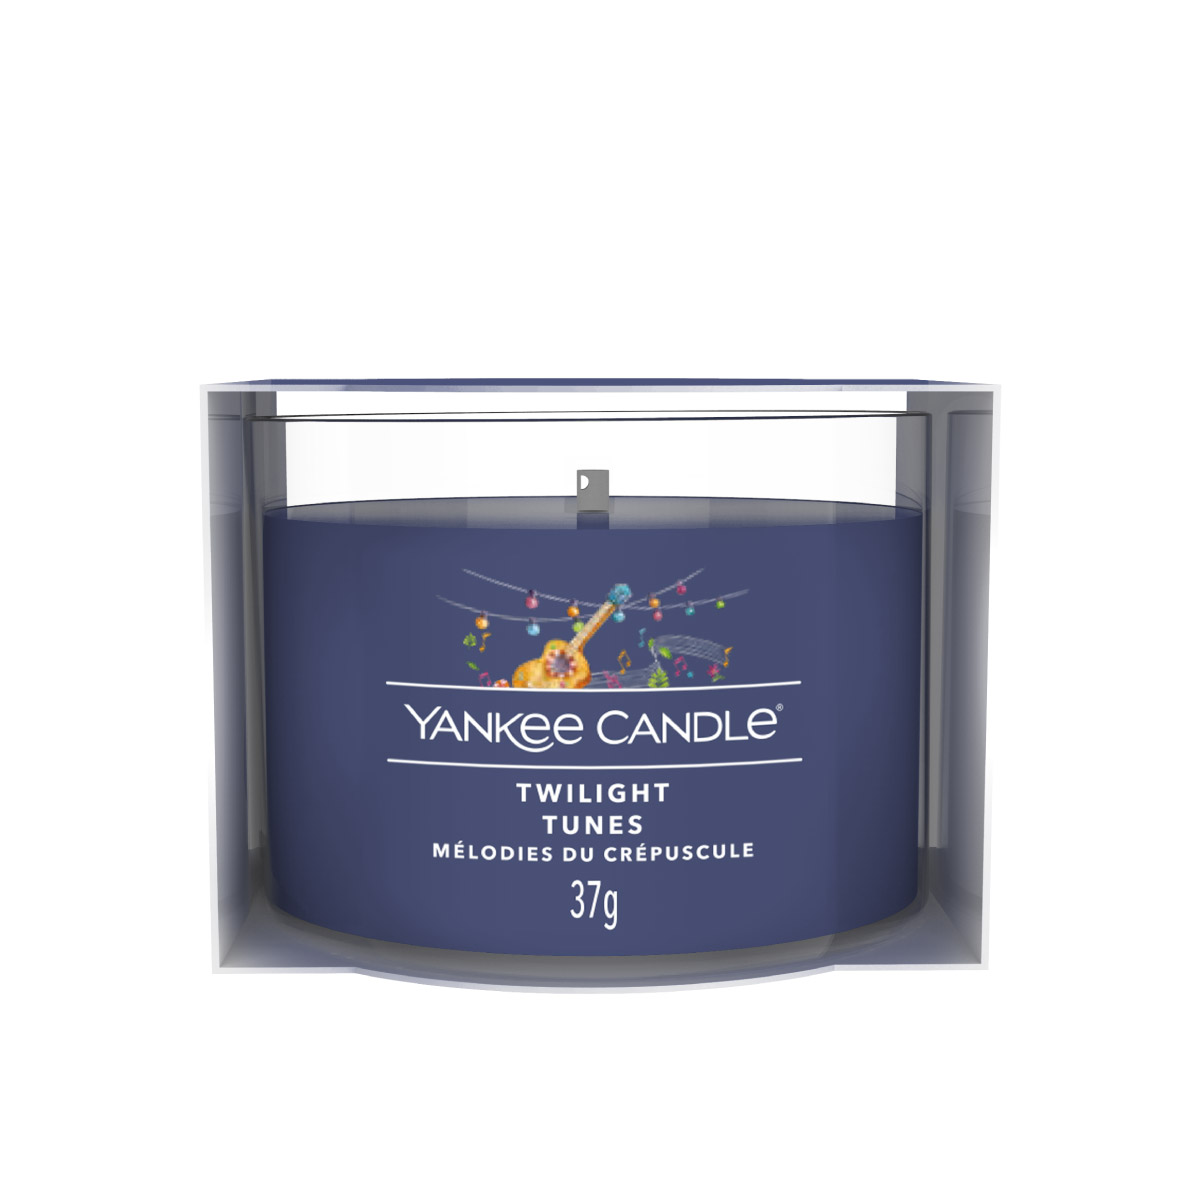 Twilight Tunes - gefülltes Votivkerzenglas 37g - Yankee Candle®